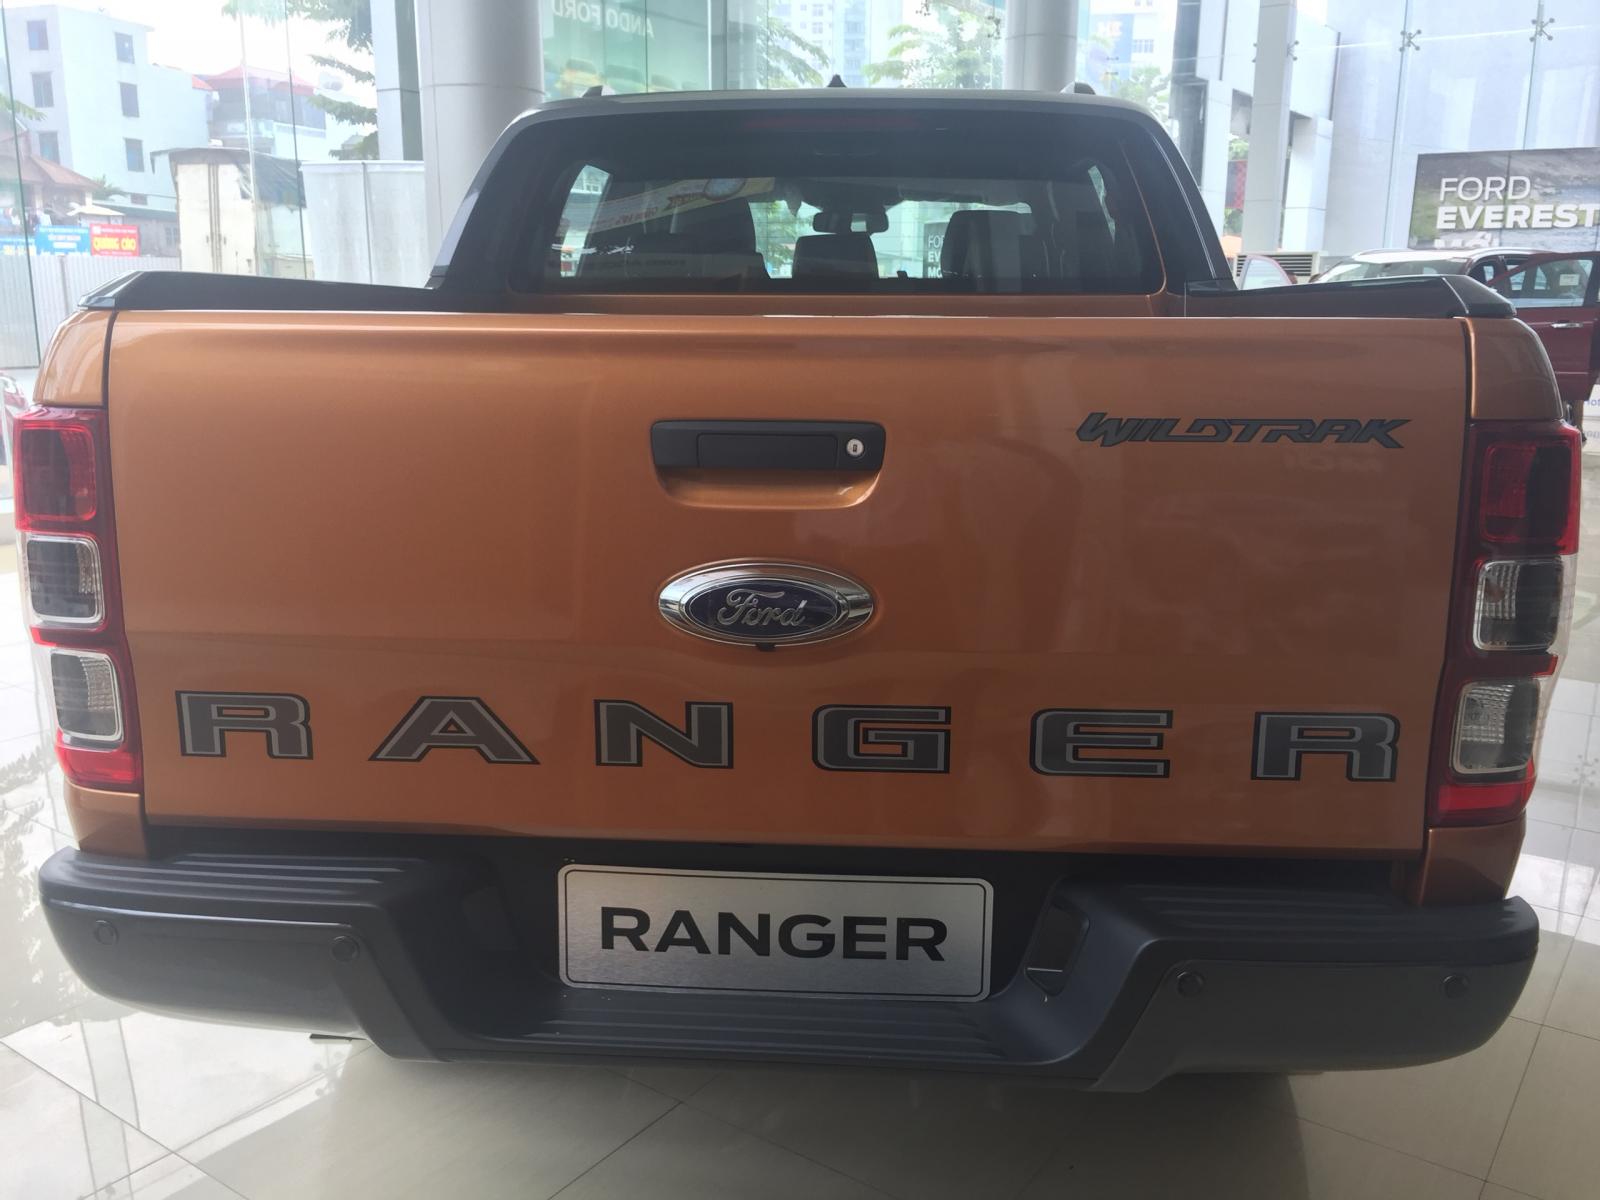 Ranger tất cả các phiên bản, giá tốt nhất thị trường, call 0865660630-5